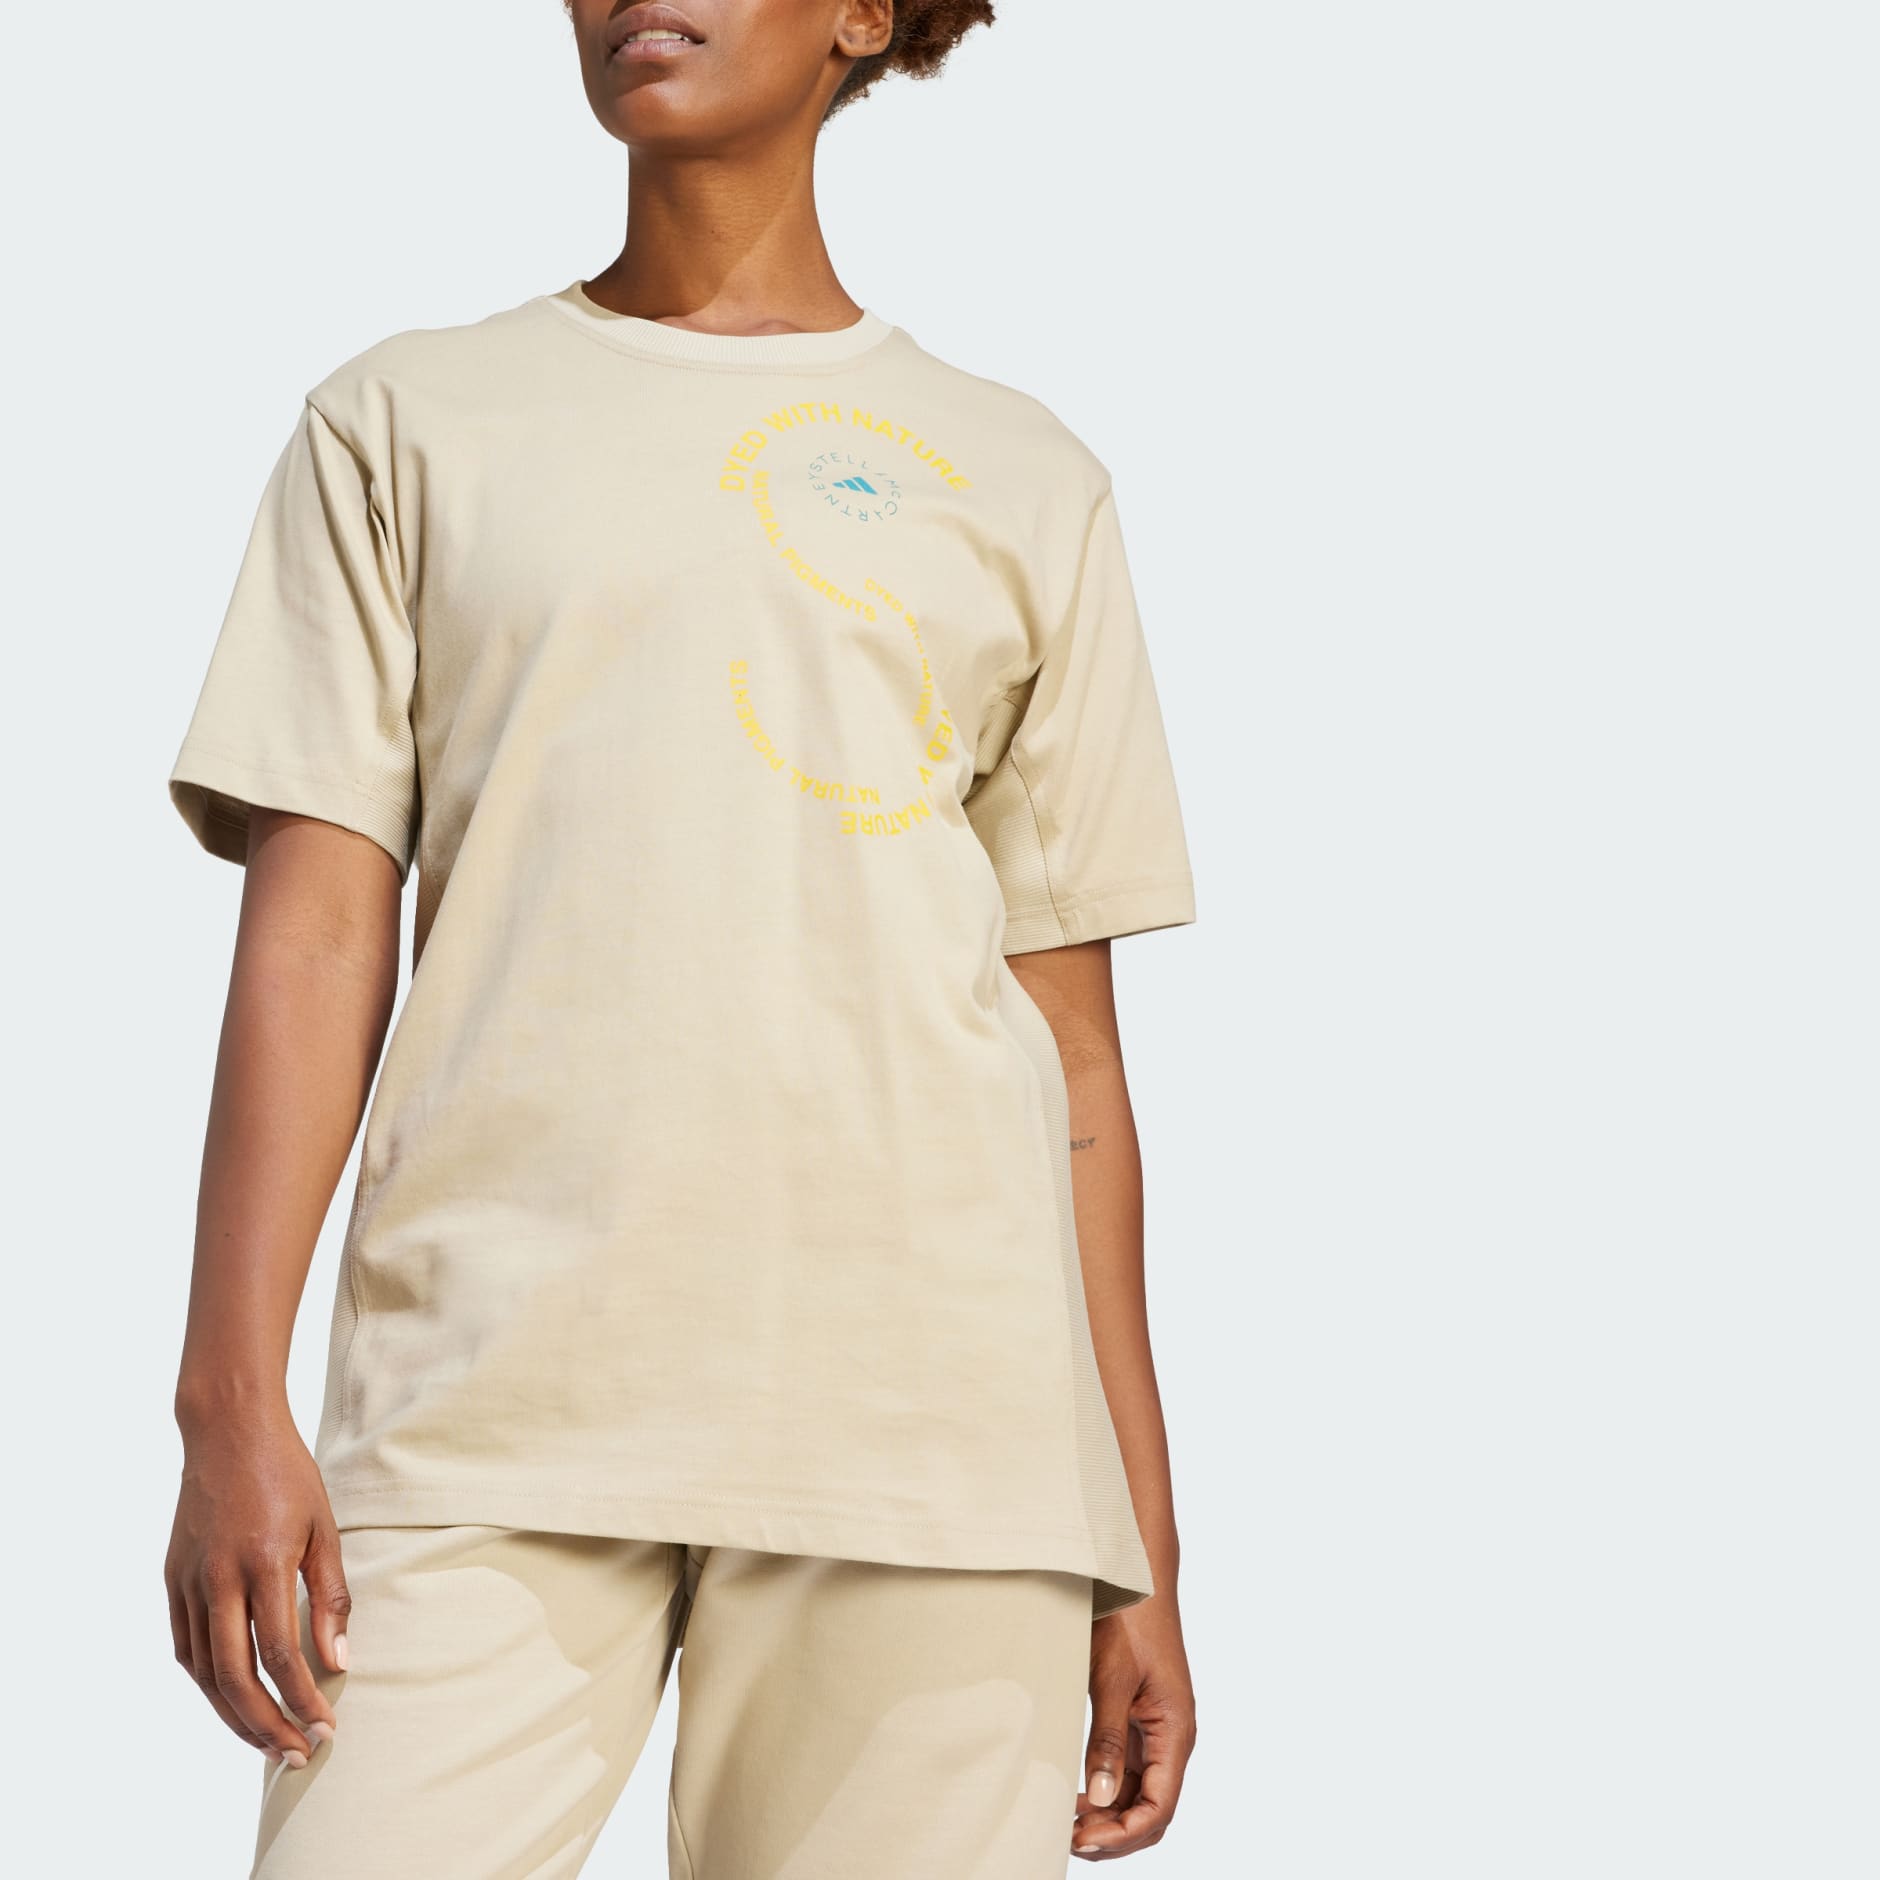 Essential Energy - T-Shirt de desporto oversized para Mulher